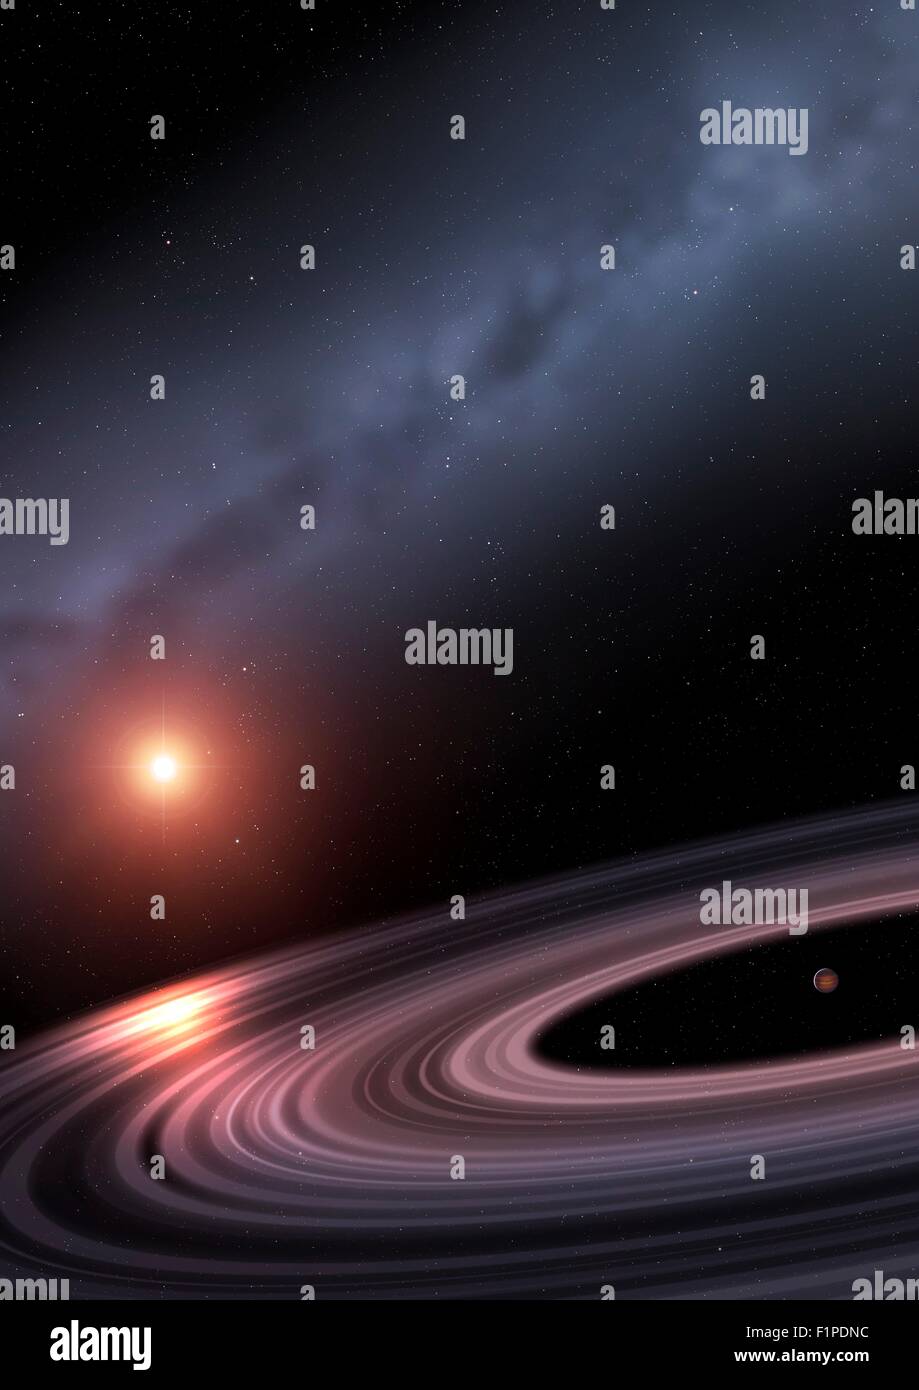 Gli astronomi hanno trovato qualcosa di interessante in orbita attorno alla stella sunlike 1SWASP J1407 420 anni luce di distanza nella costellazione di Foto Stock